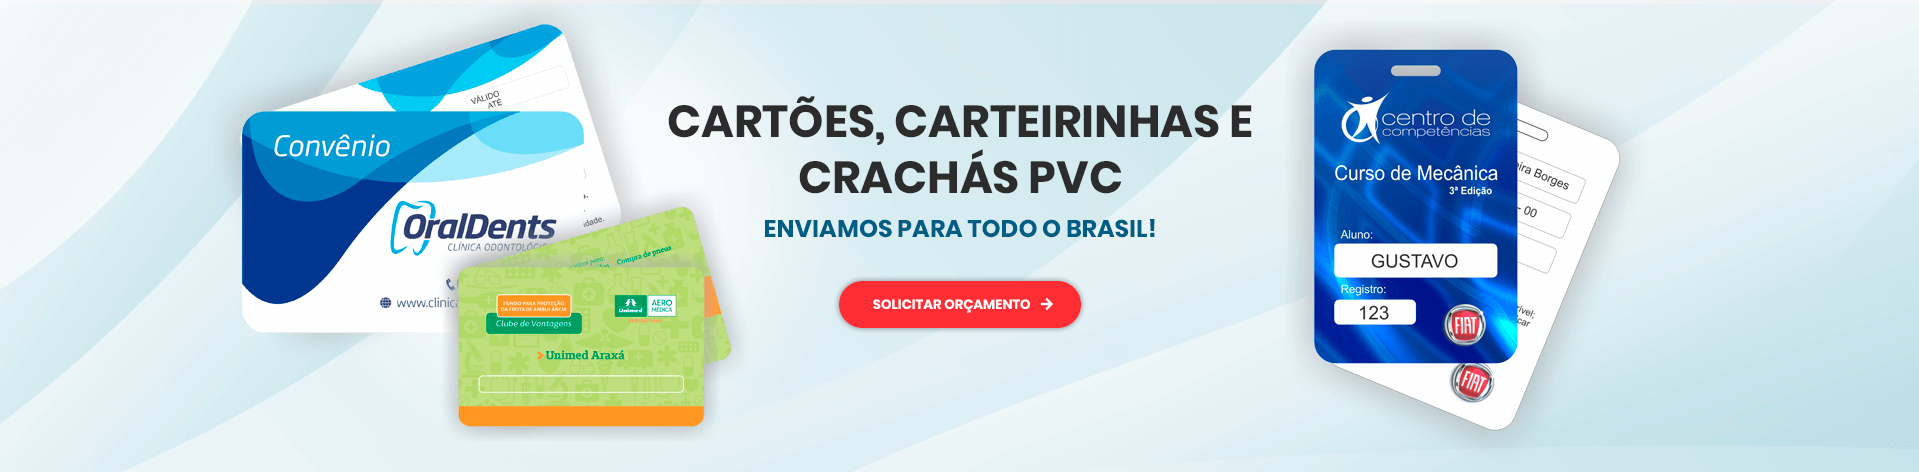 (c) Cardsolutionsbh.com.br